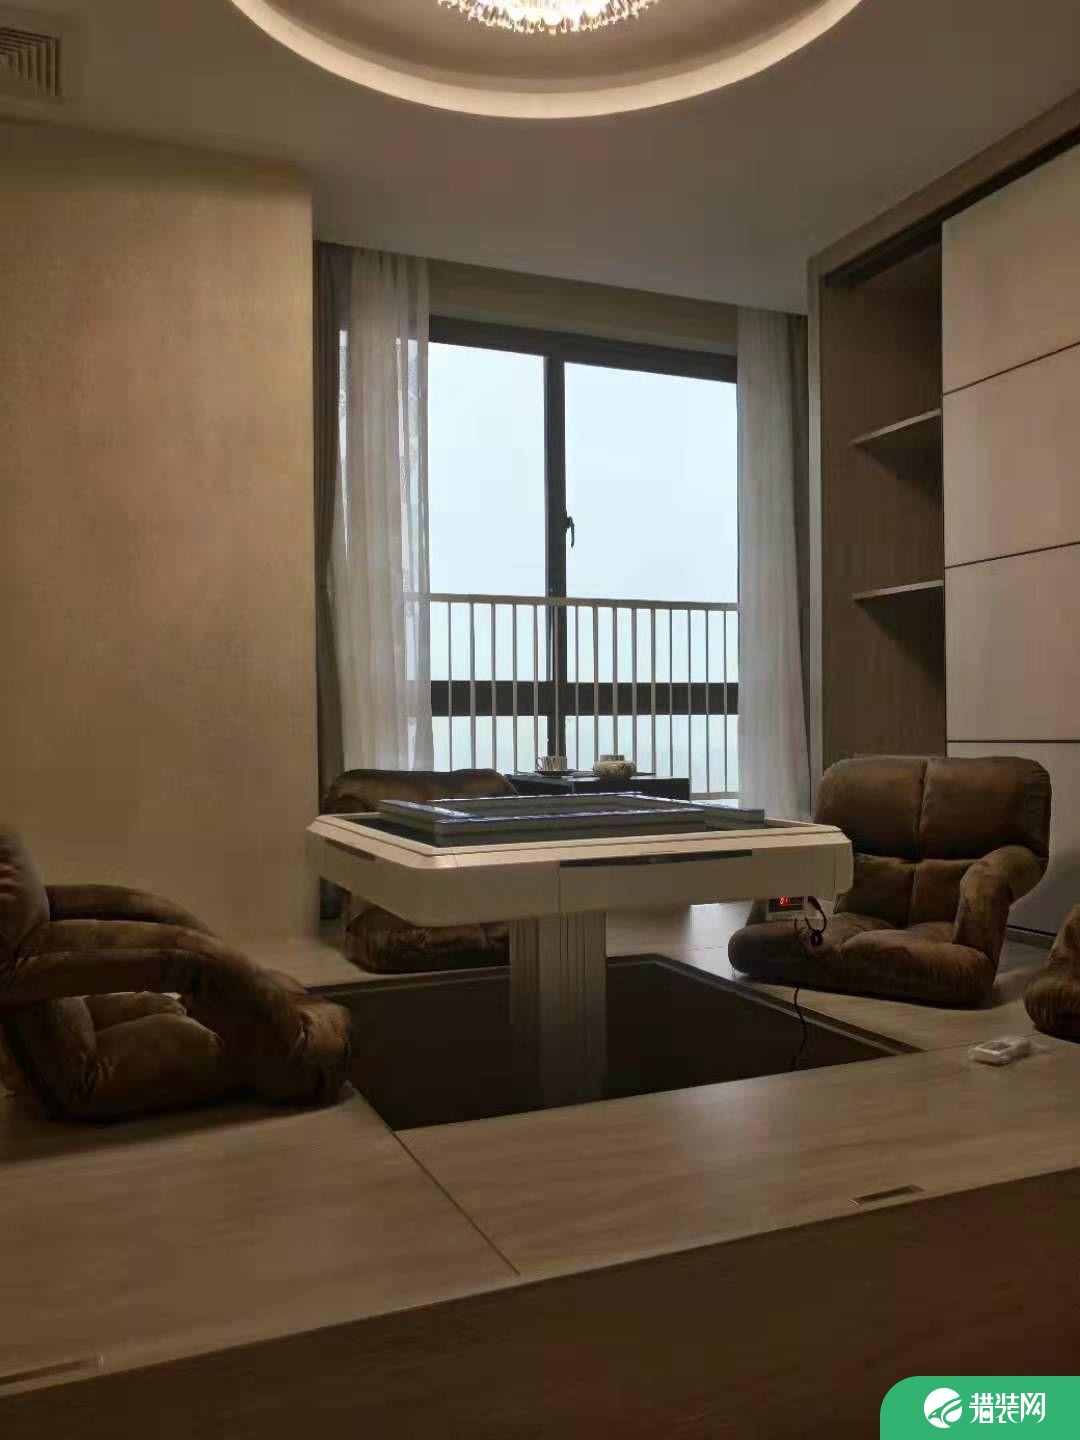 无锡品质现代风格二居装修效果图展示